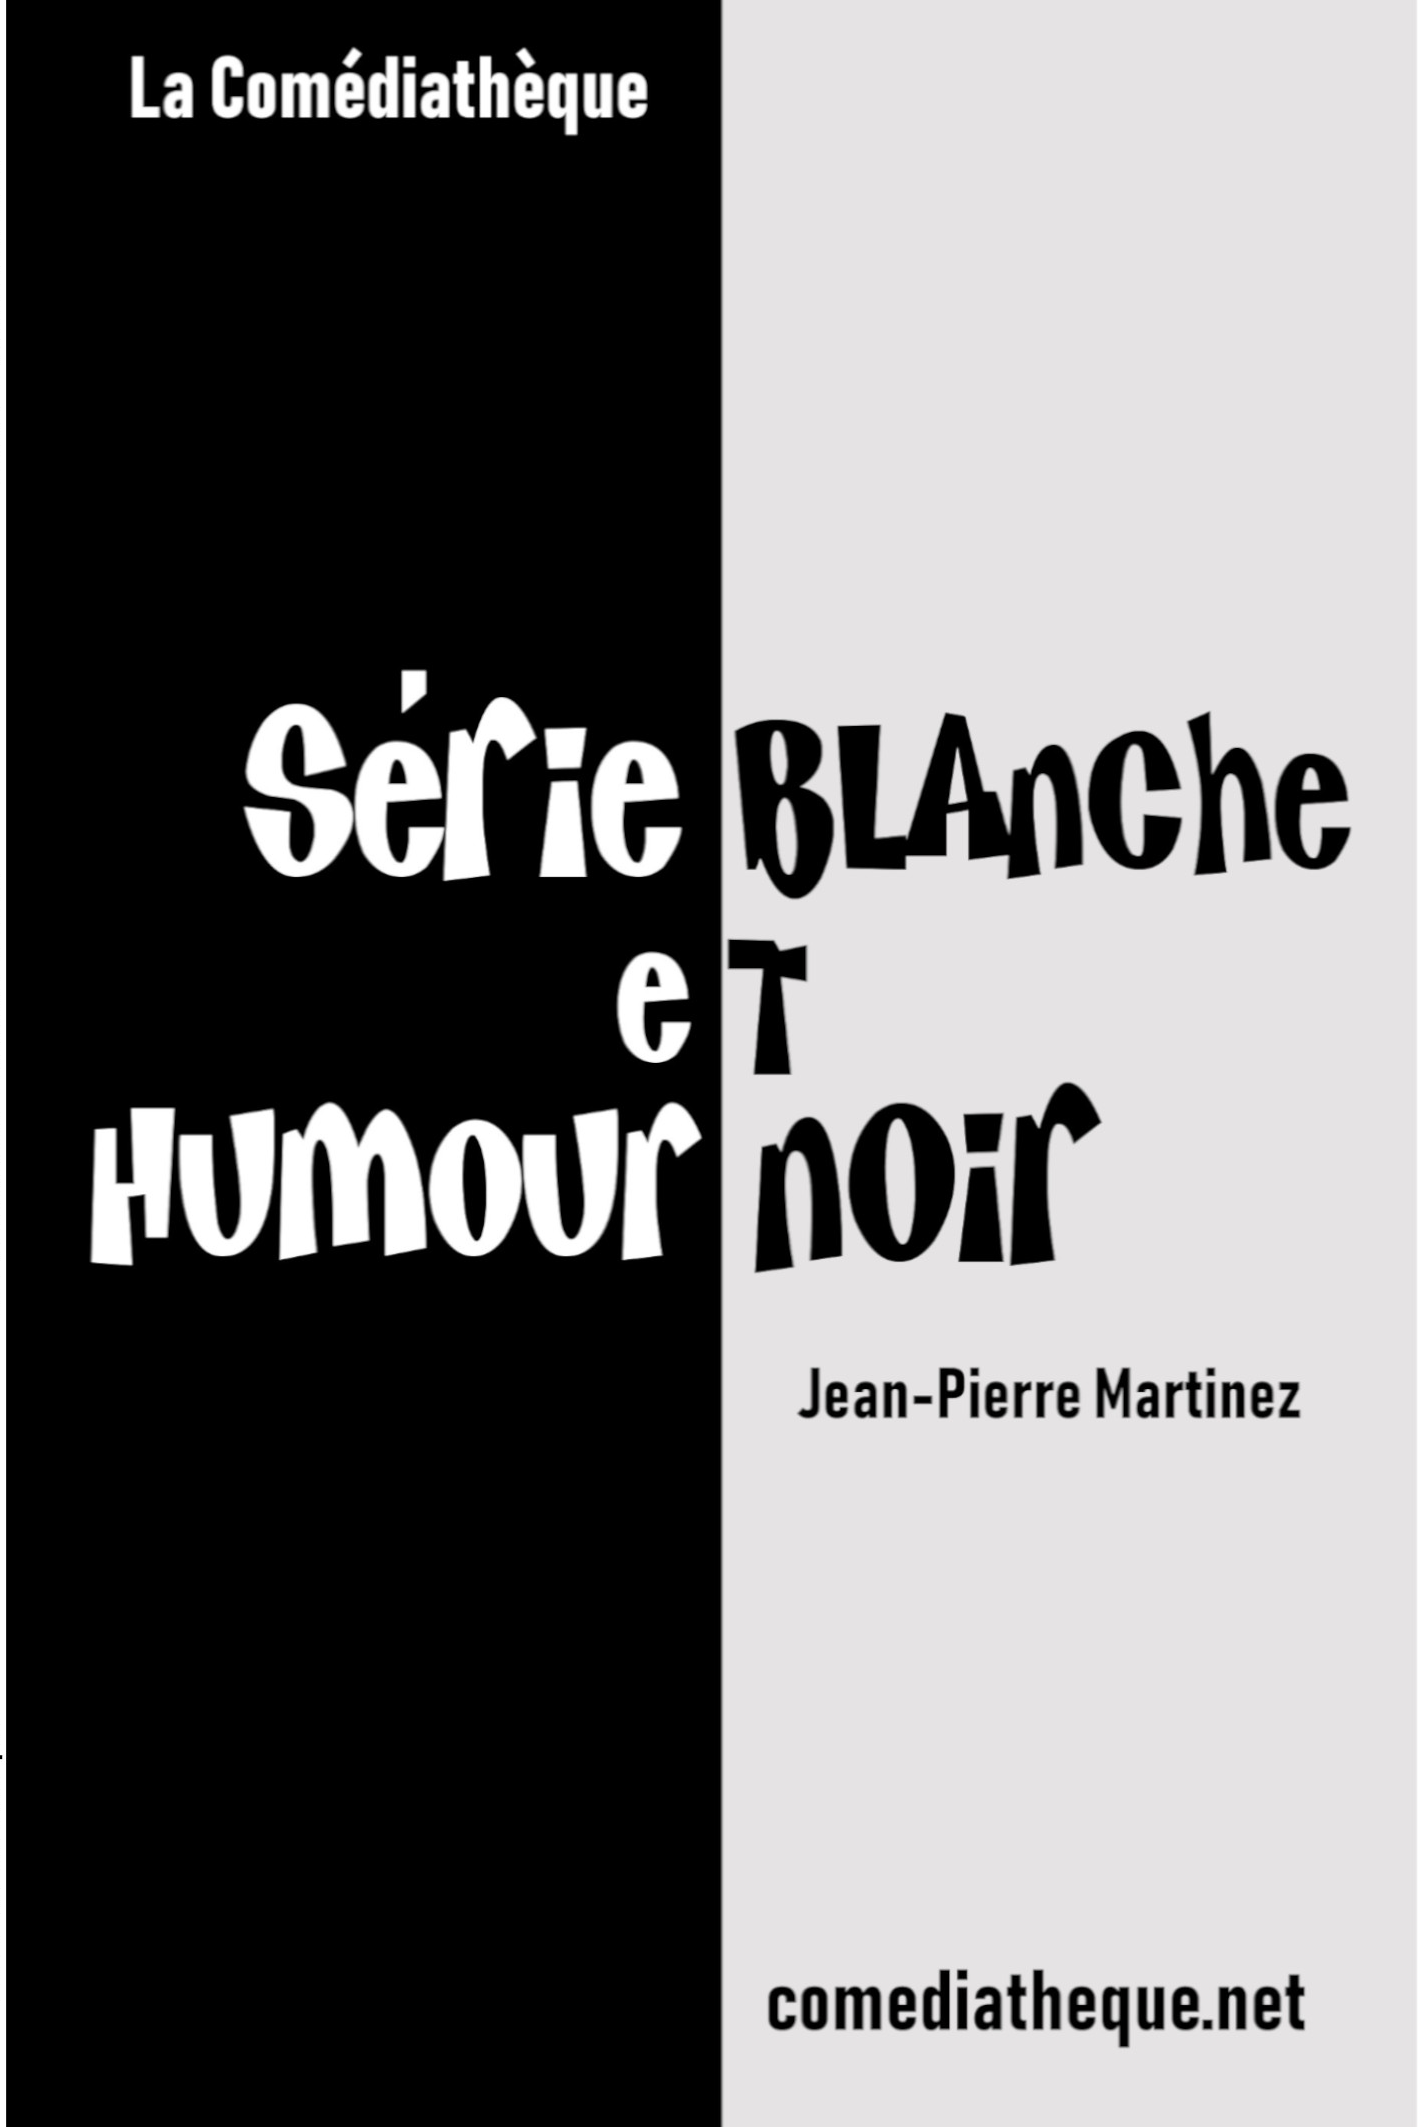 Série blanche et humour noir - Jean-Pierre Martinez